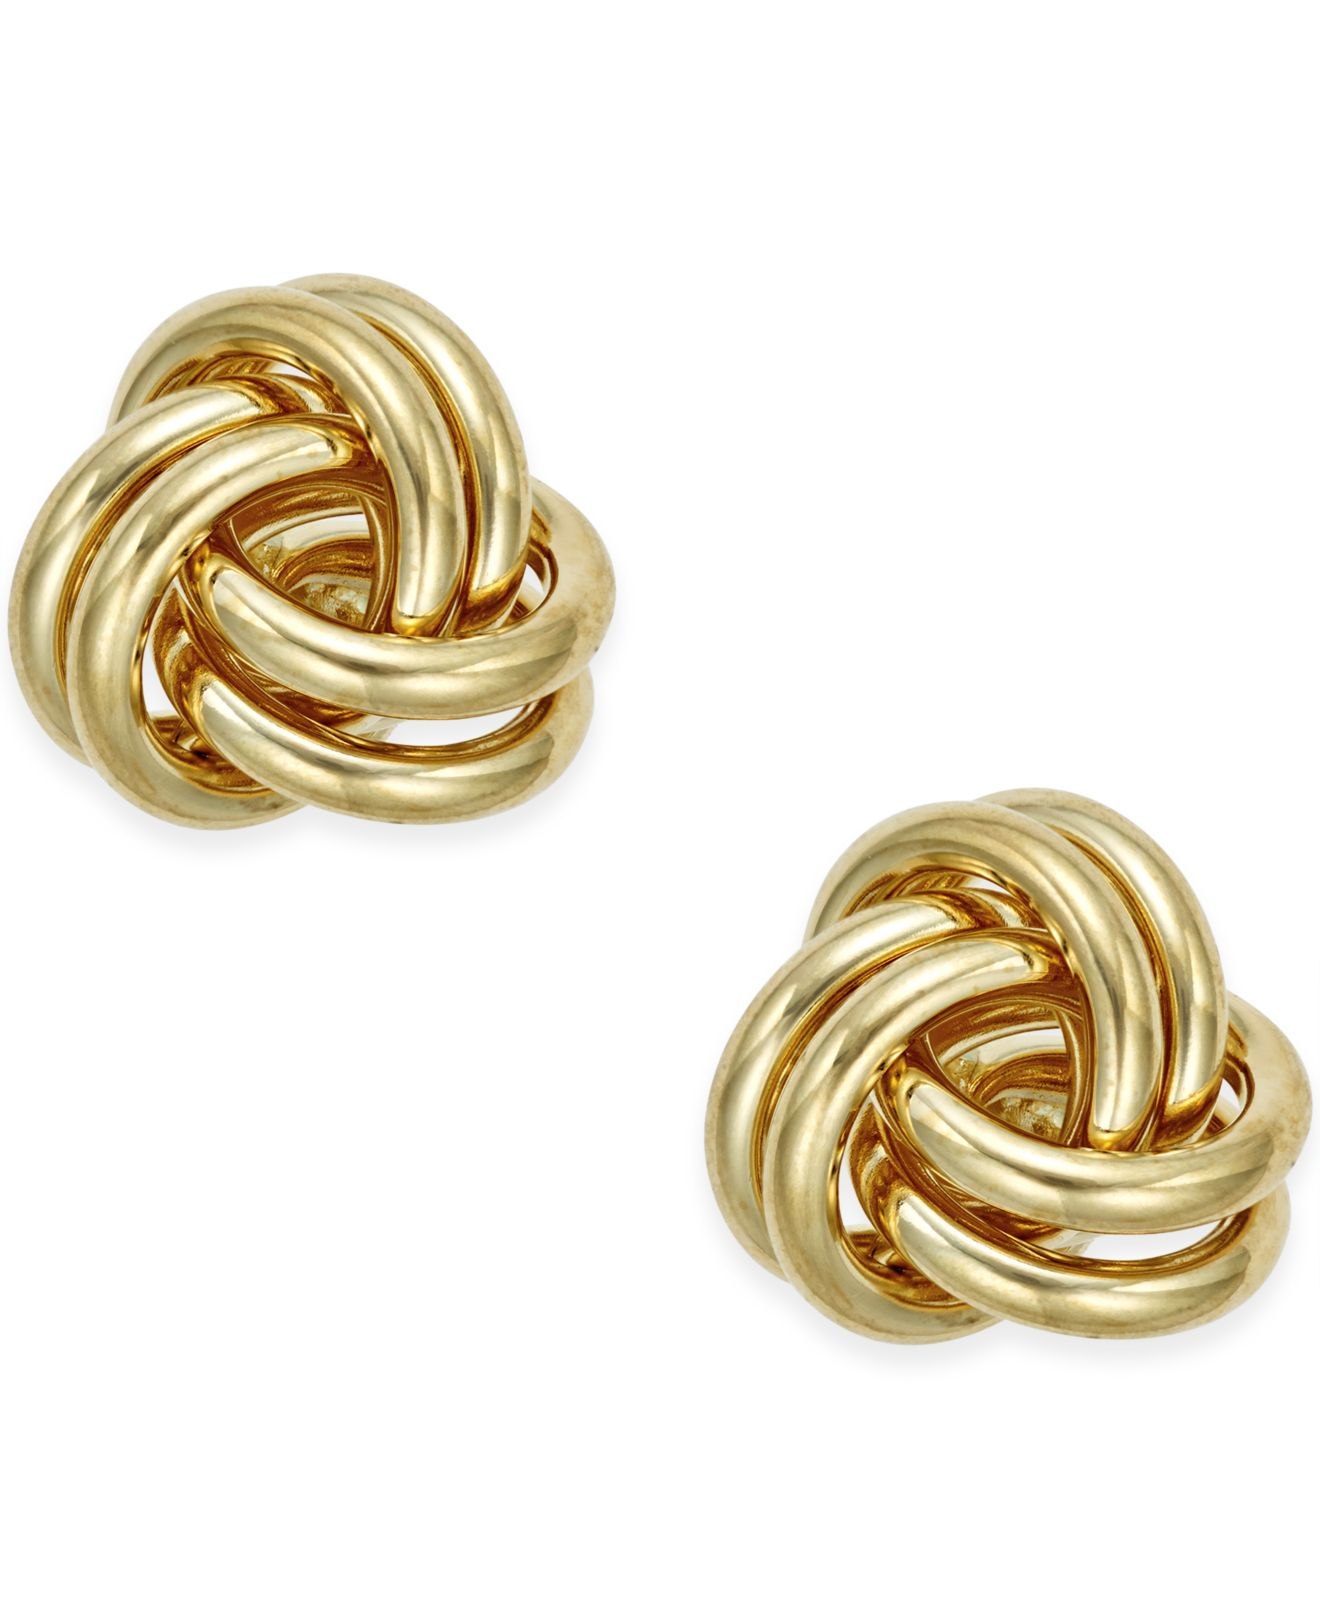  Macy s  Love Knot Stud  Earrings  In 10k Gold  in Gold  Yellow 